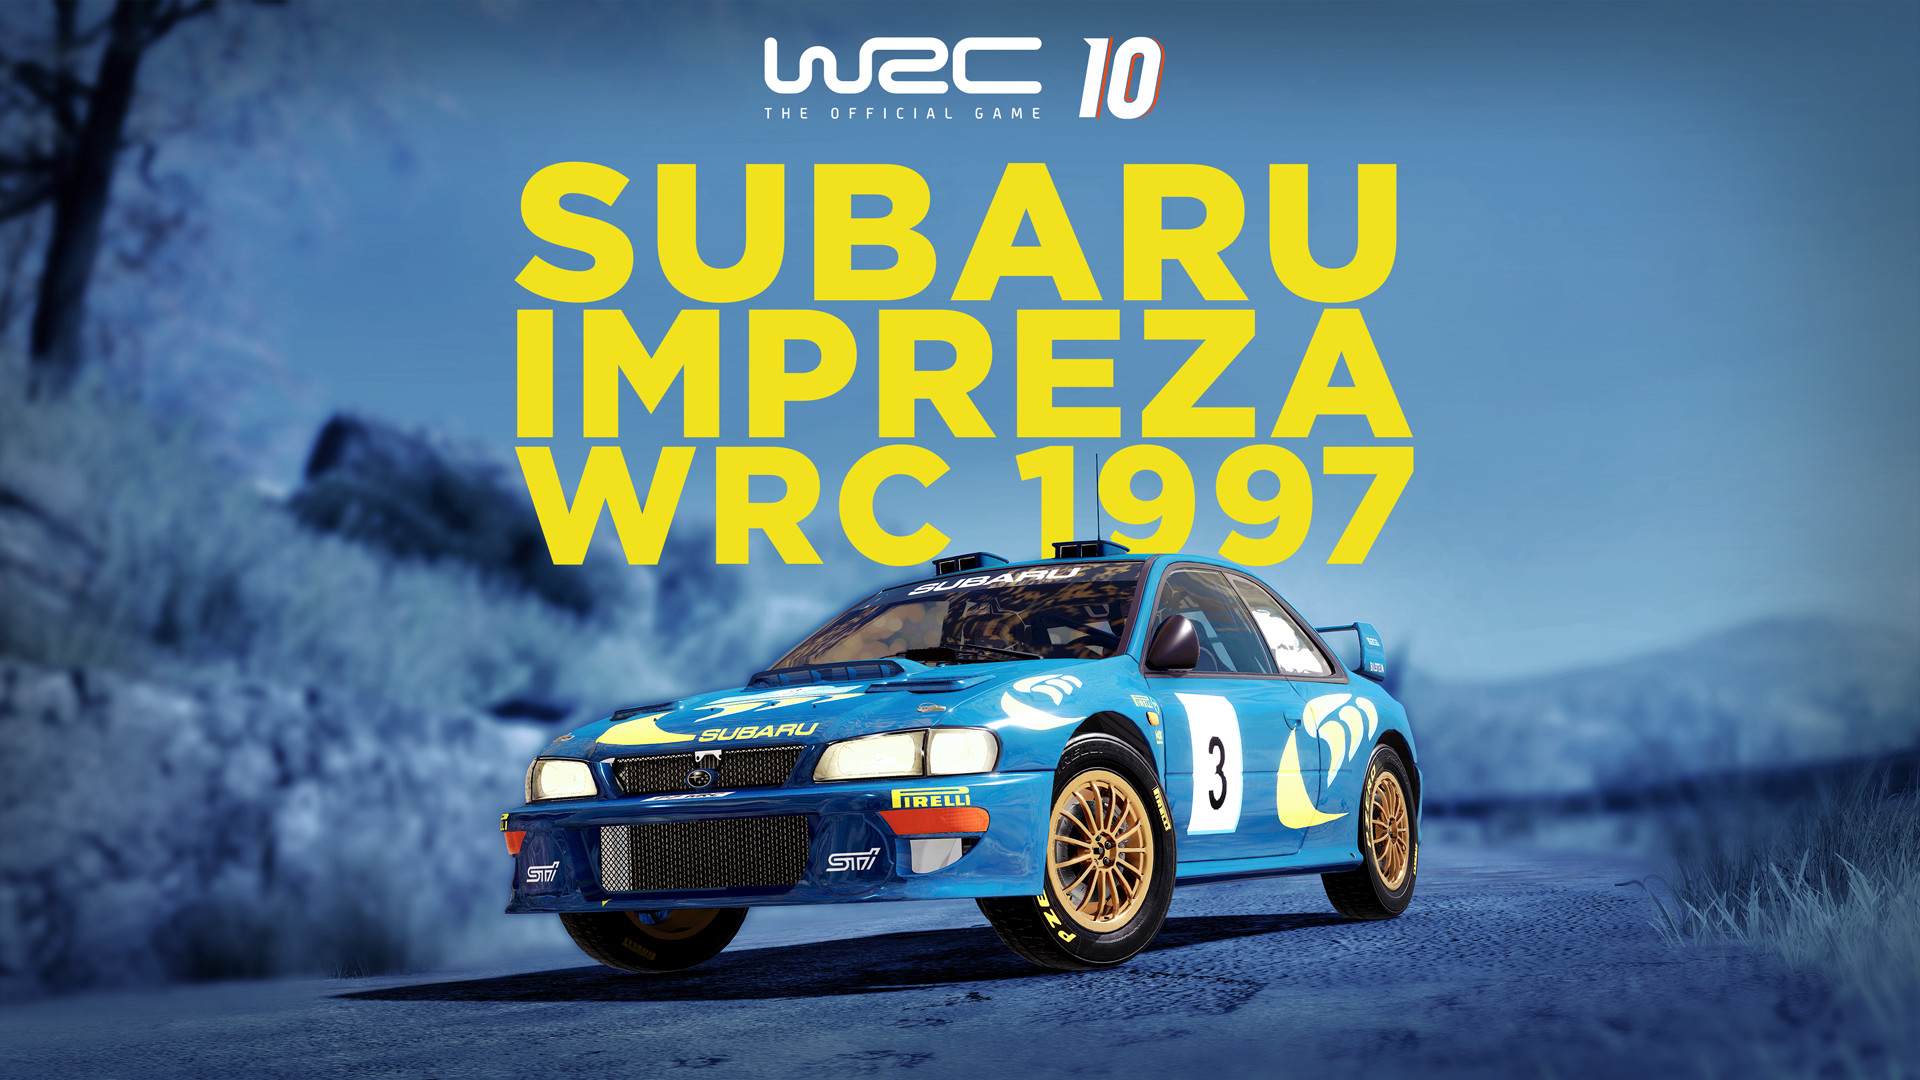 WRC 10 - Subaru Impreza WRC 1997 DLC Steam CD Key 3.33$